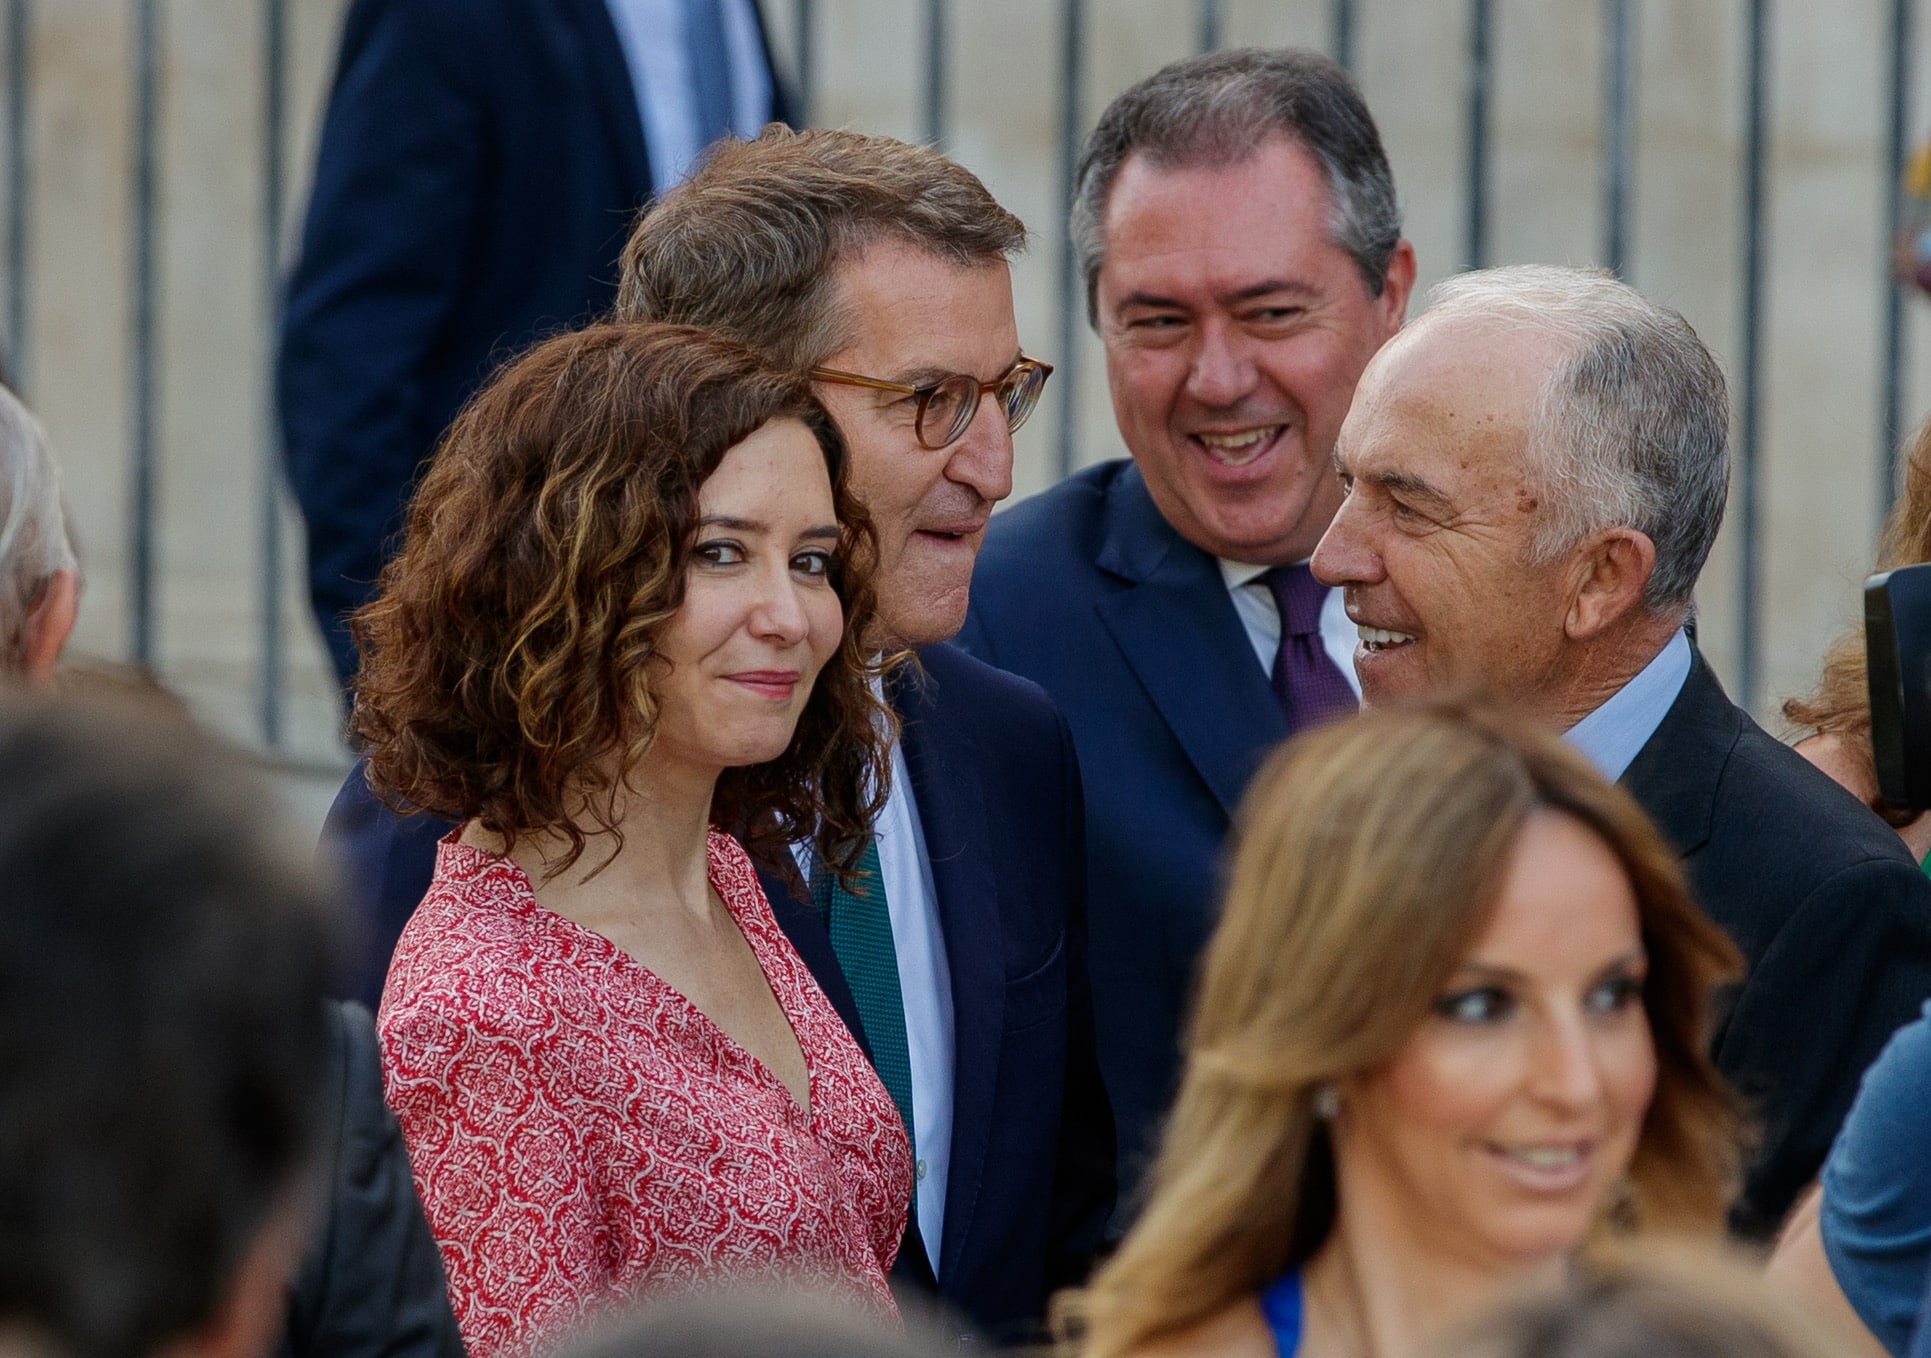 La presidenta de la Comunidad de Madrid, Isabel Díaz Ayuso; del PP, Alberto Núñez Feijóo, y el líder del PSOE andaluz, Juan Espadas (2d ) conversan antes de la jura del presidente de la Junta de Andalucía